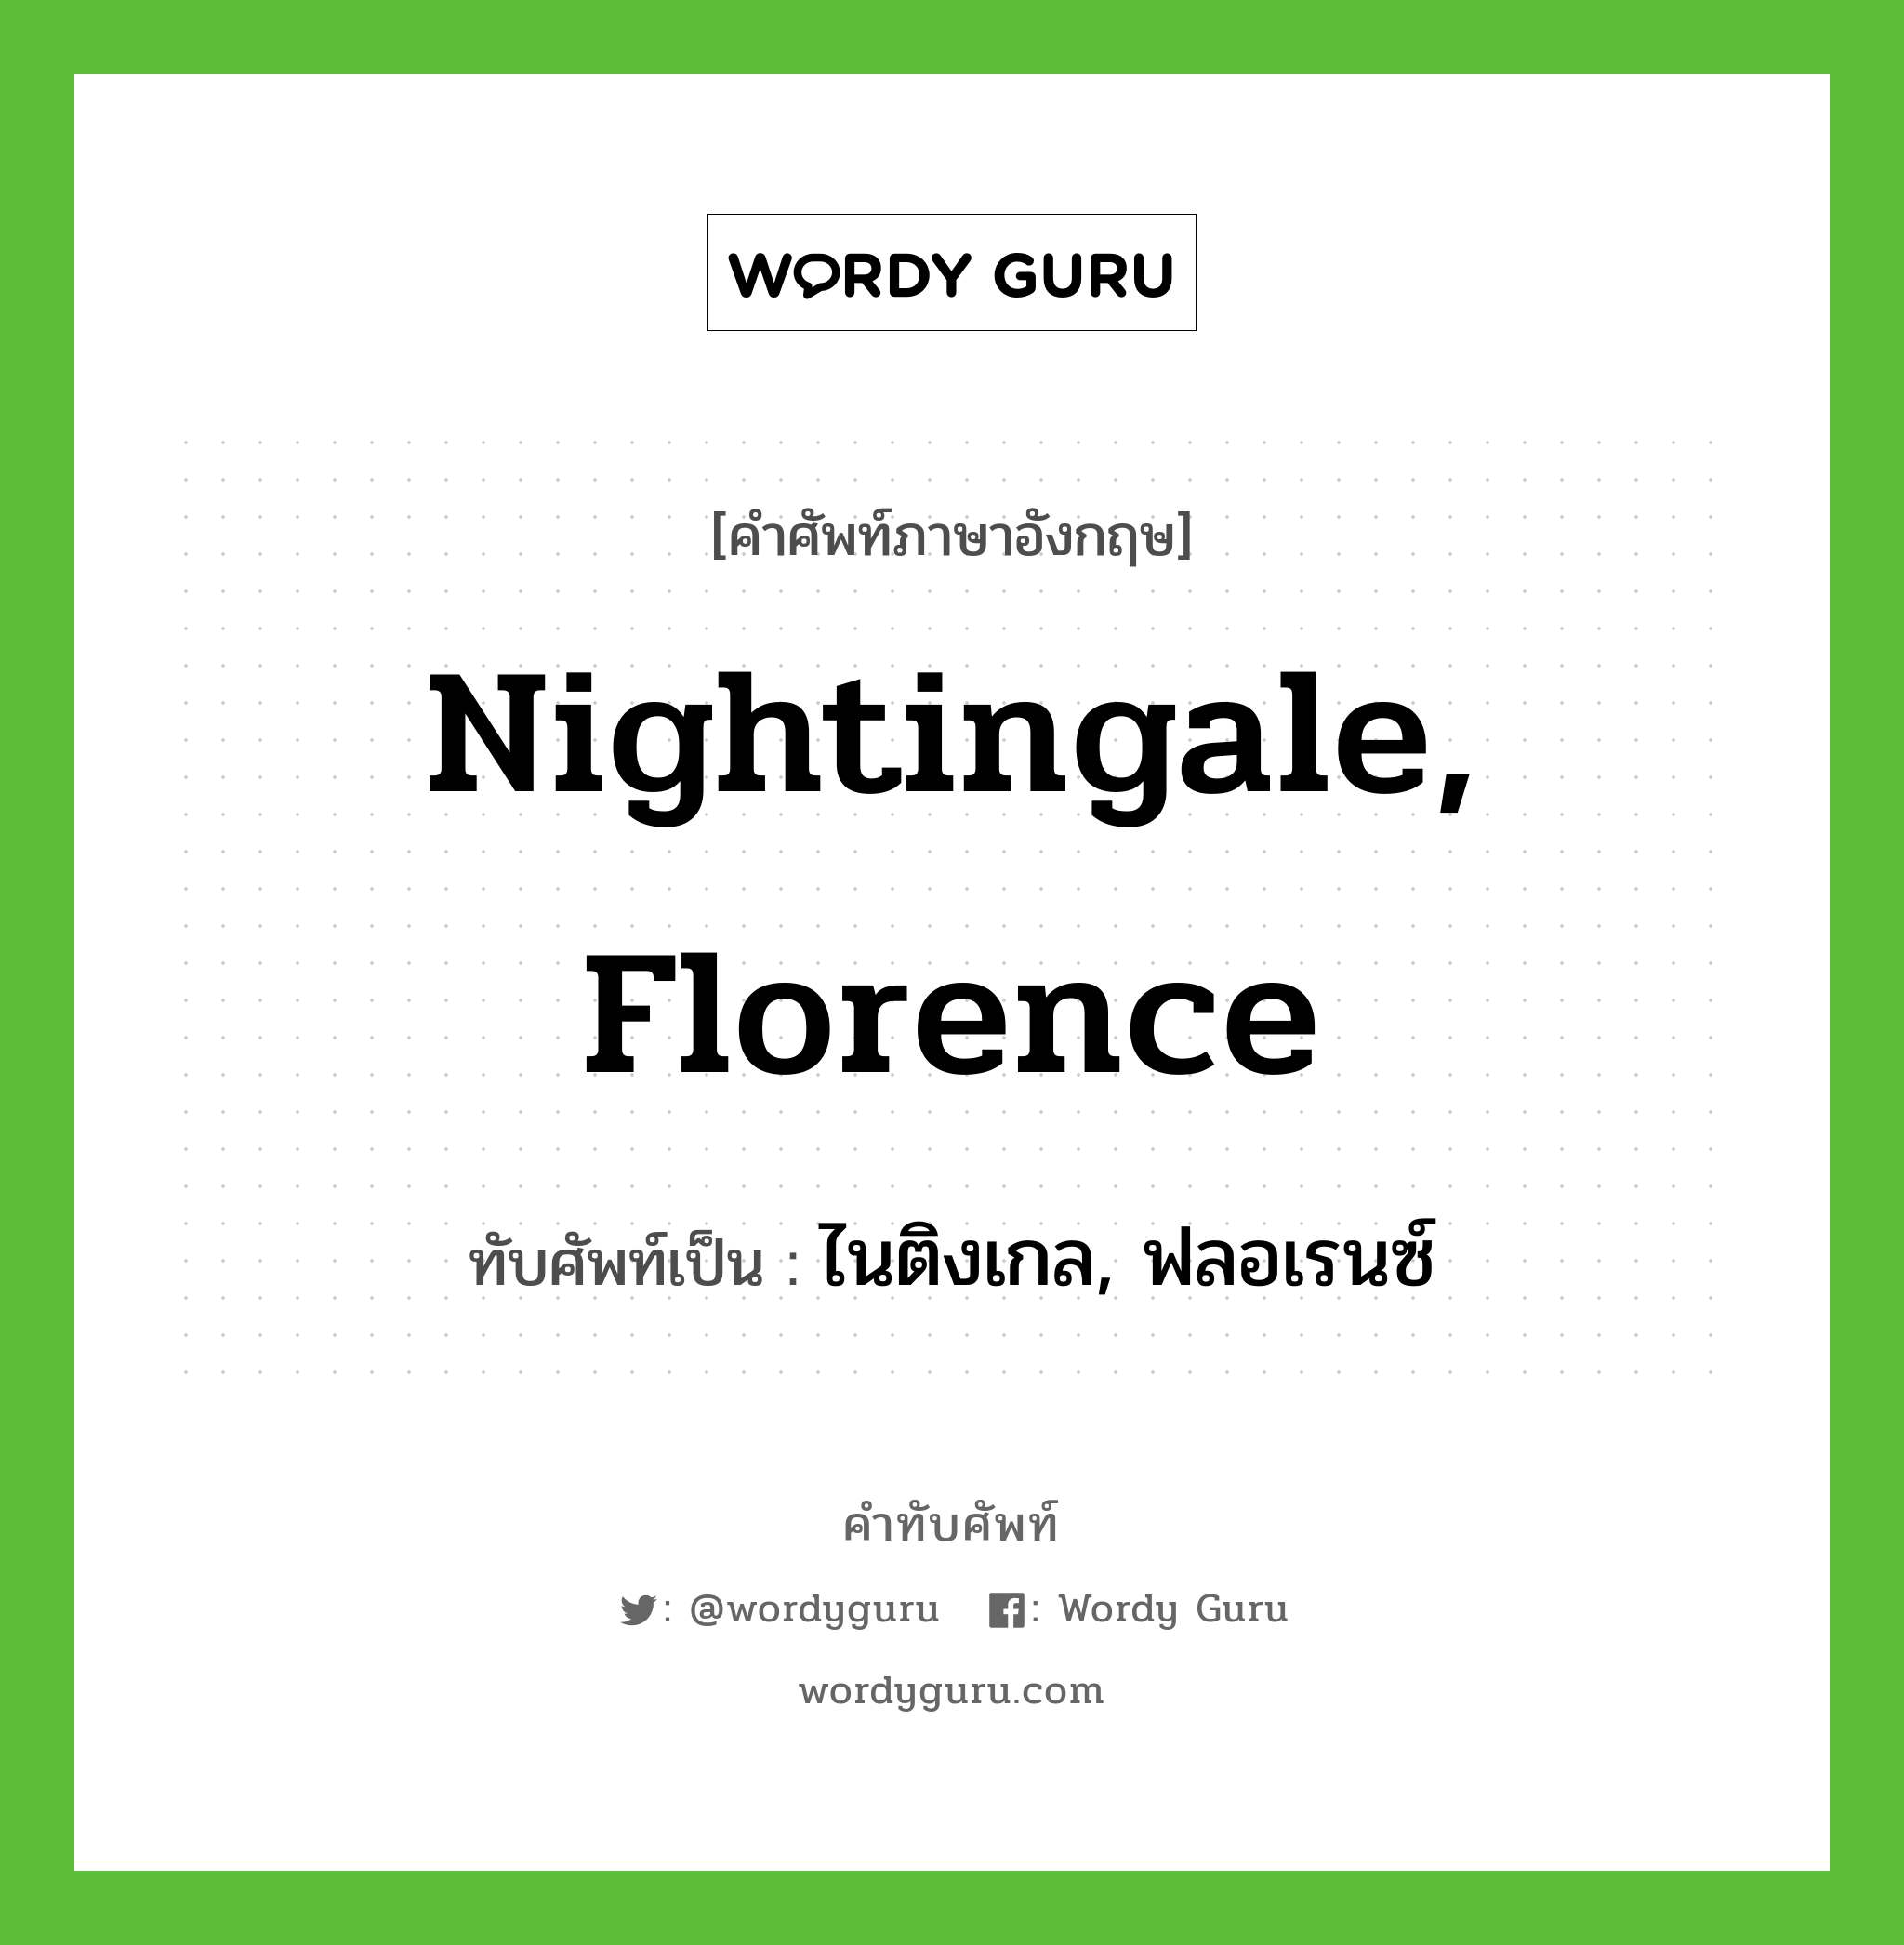 ไนติงเกล, ฟลอเรนซ์ เขียนอย่างไร?, คำศัพท์ภาษาอังกฤษ ไนติงเกล, ฟลอเรนซ์ ทับศัพท์เป็น Nightingale, Florence